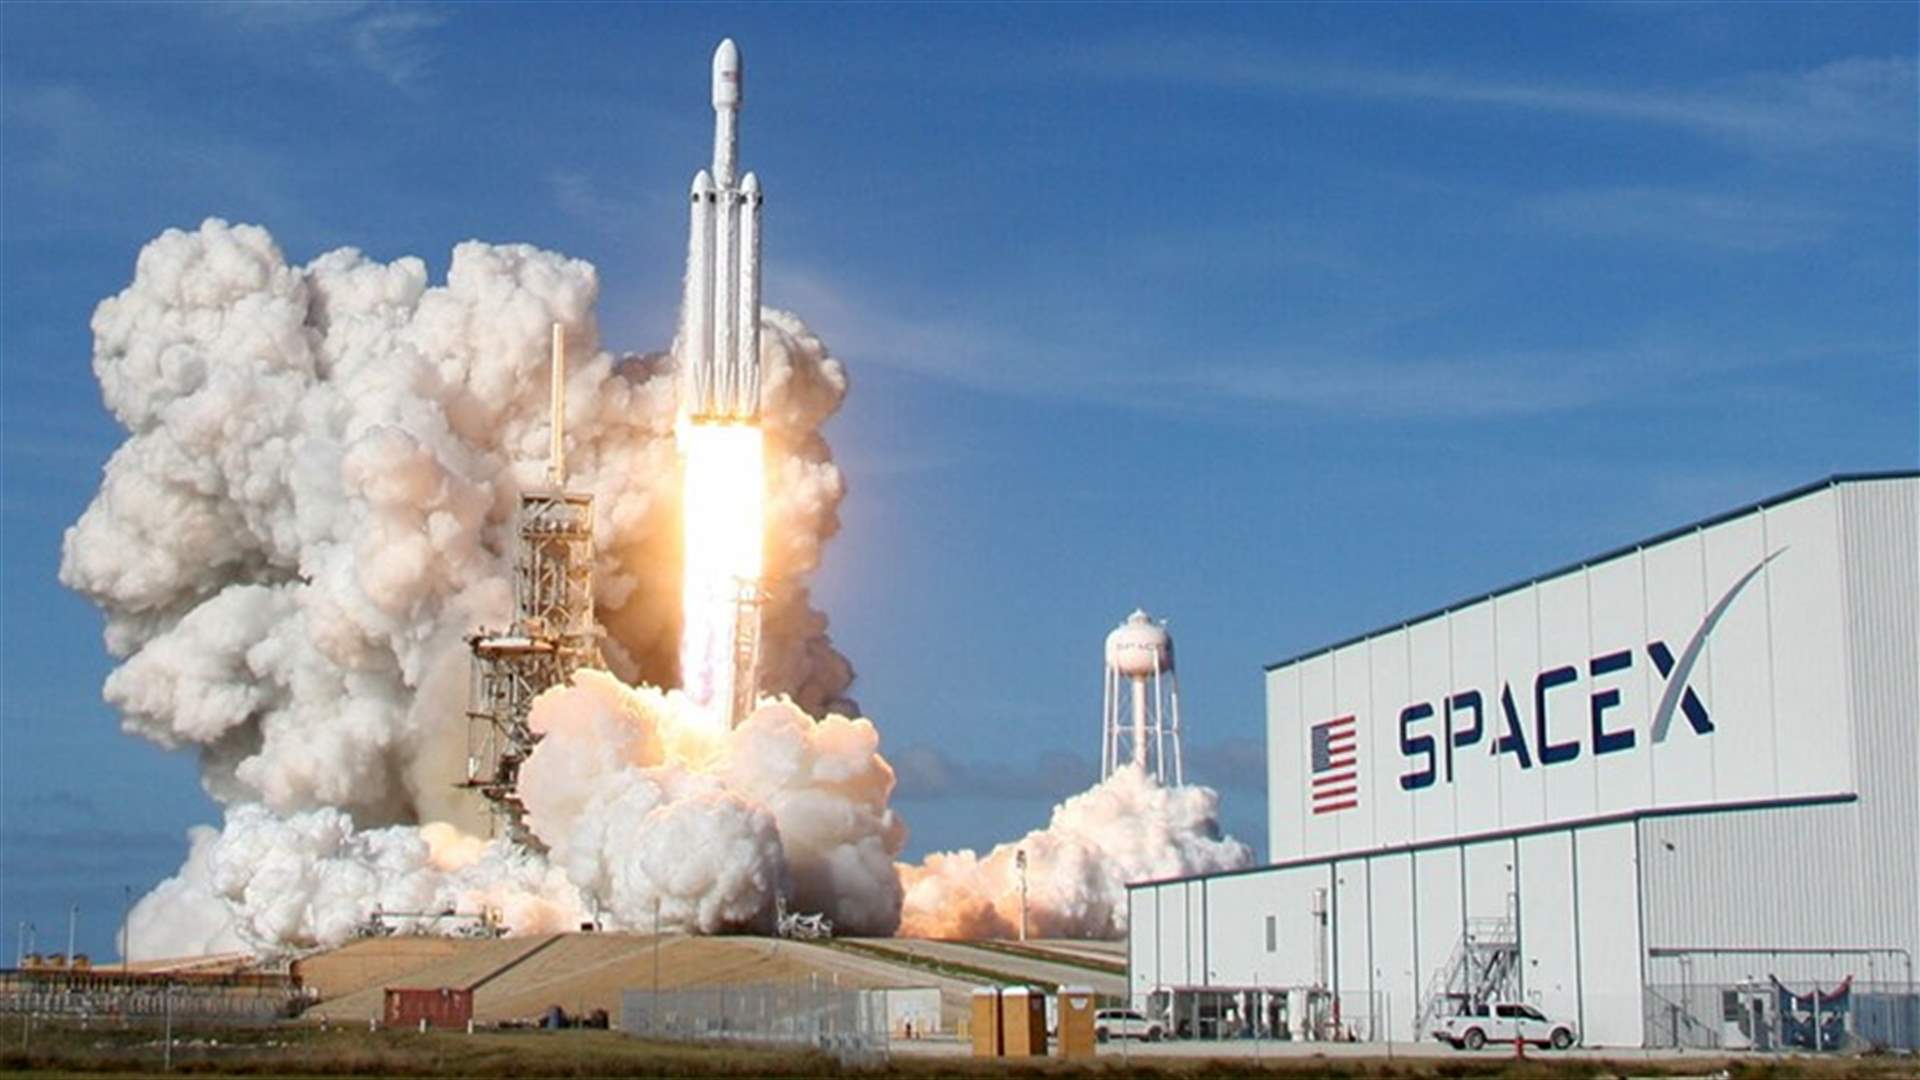 سبيس إكس تطلق عدداً قياسياً من مركبات الفضاء في مهمة واحدة